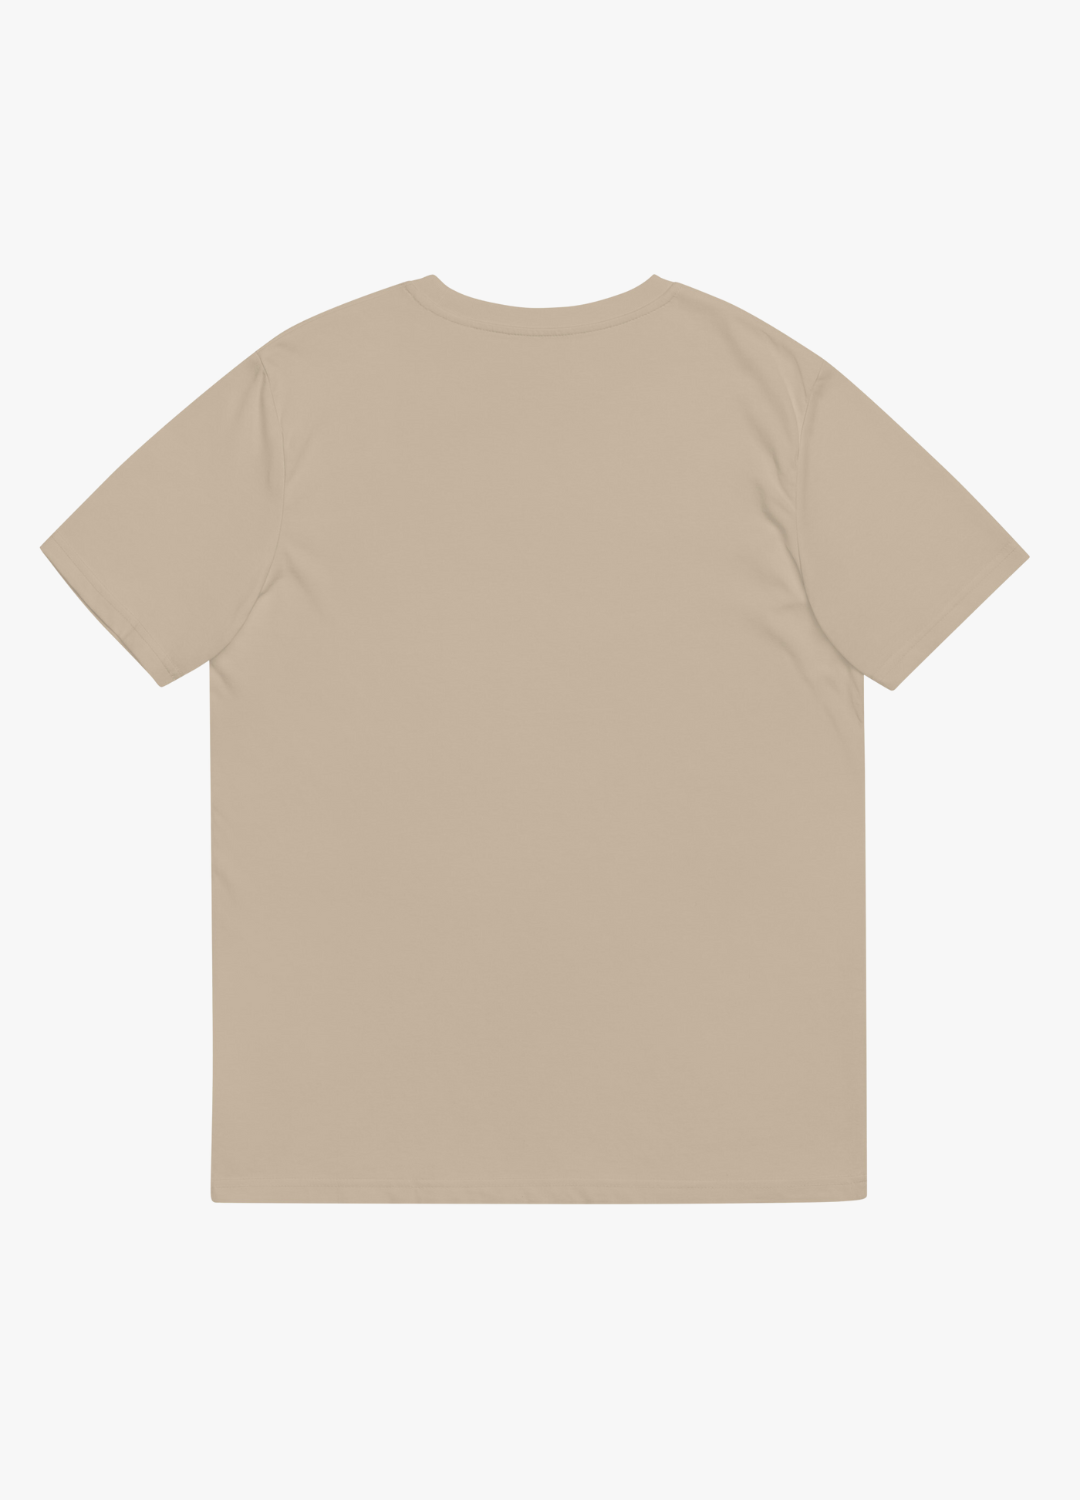 tshirt en coton vegan et biodégradable manche courte léger et drôle unisexe couleur beige sable